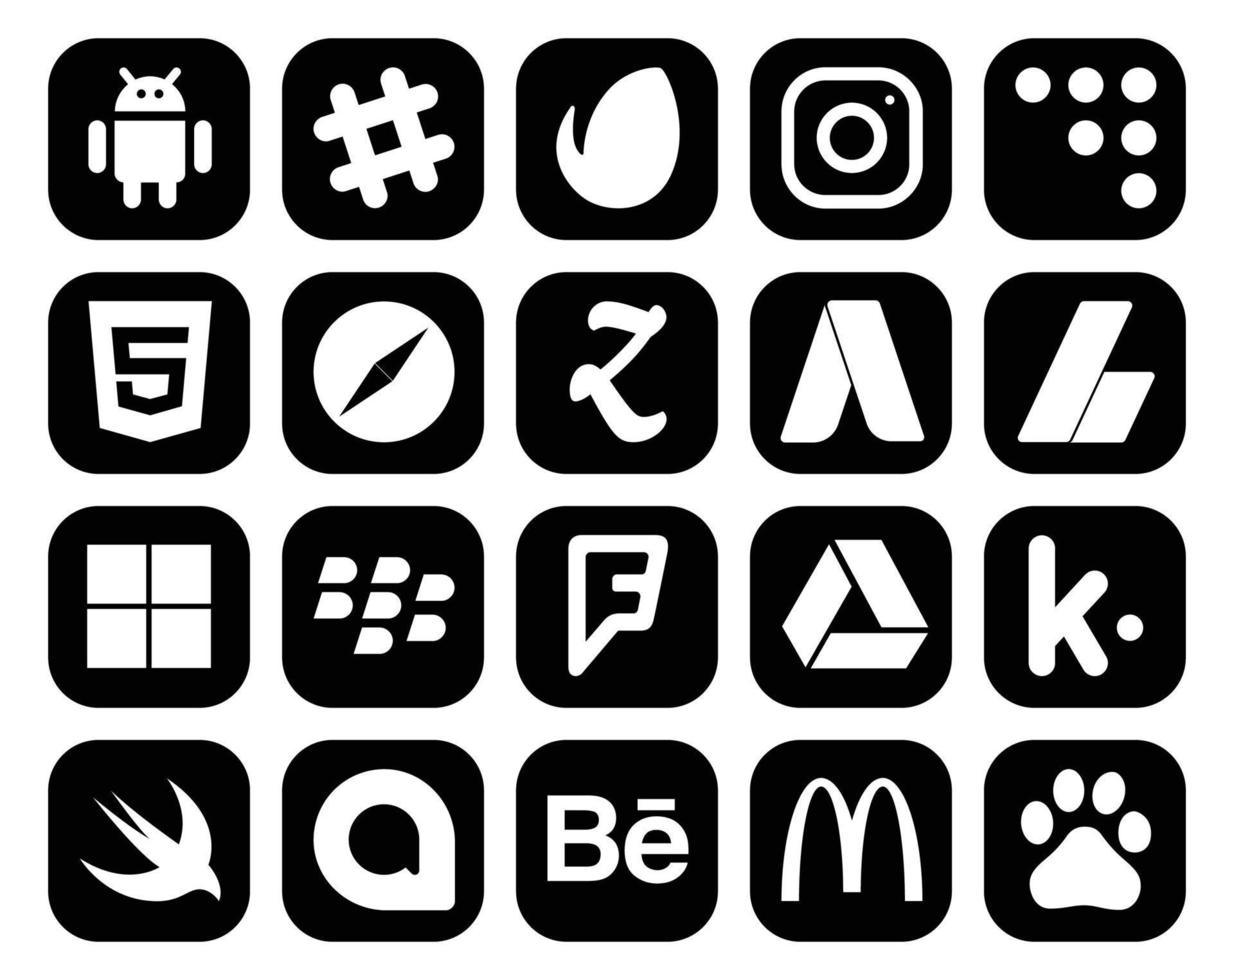 20 Symbolpakete für soziale Medien, einschließlich Kik Foursquare-Browser-Blackberry-Anzeigen vektor